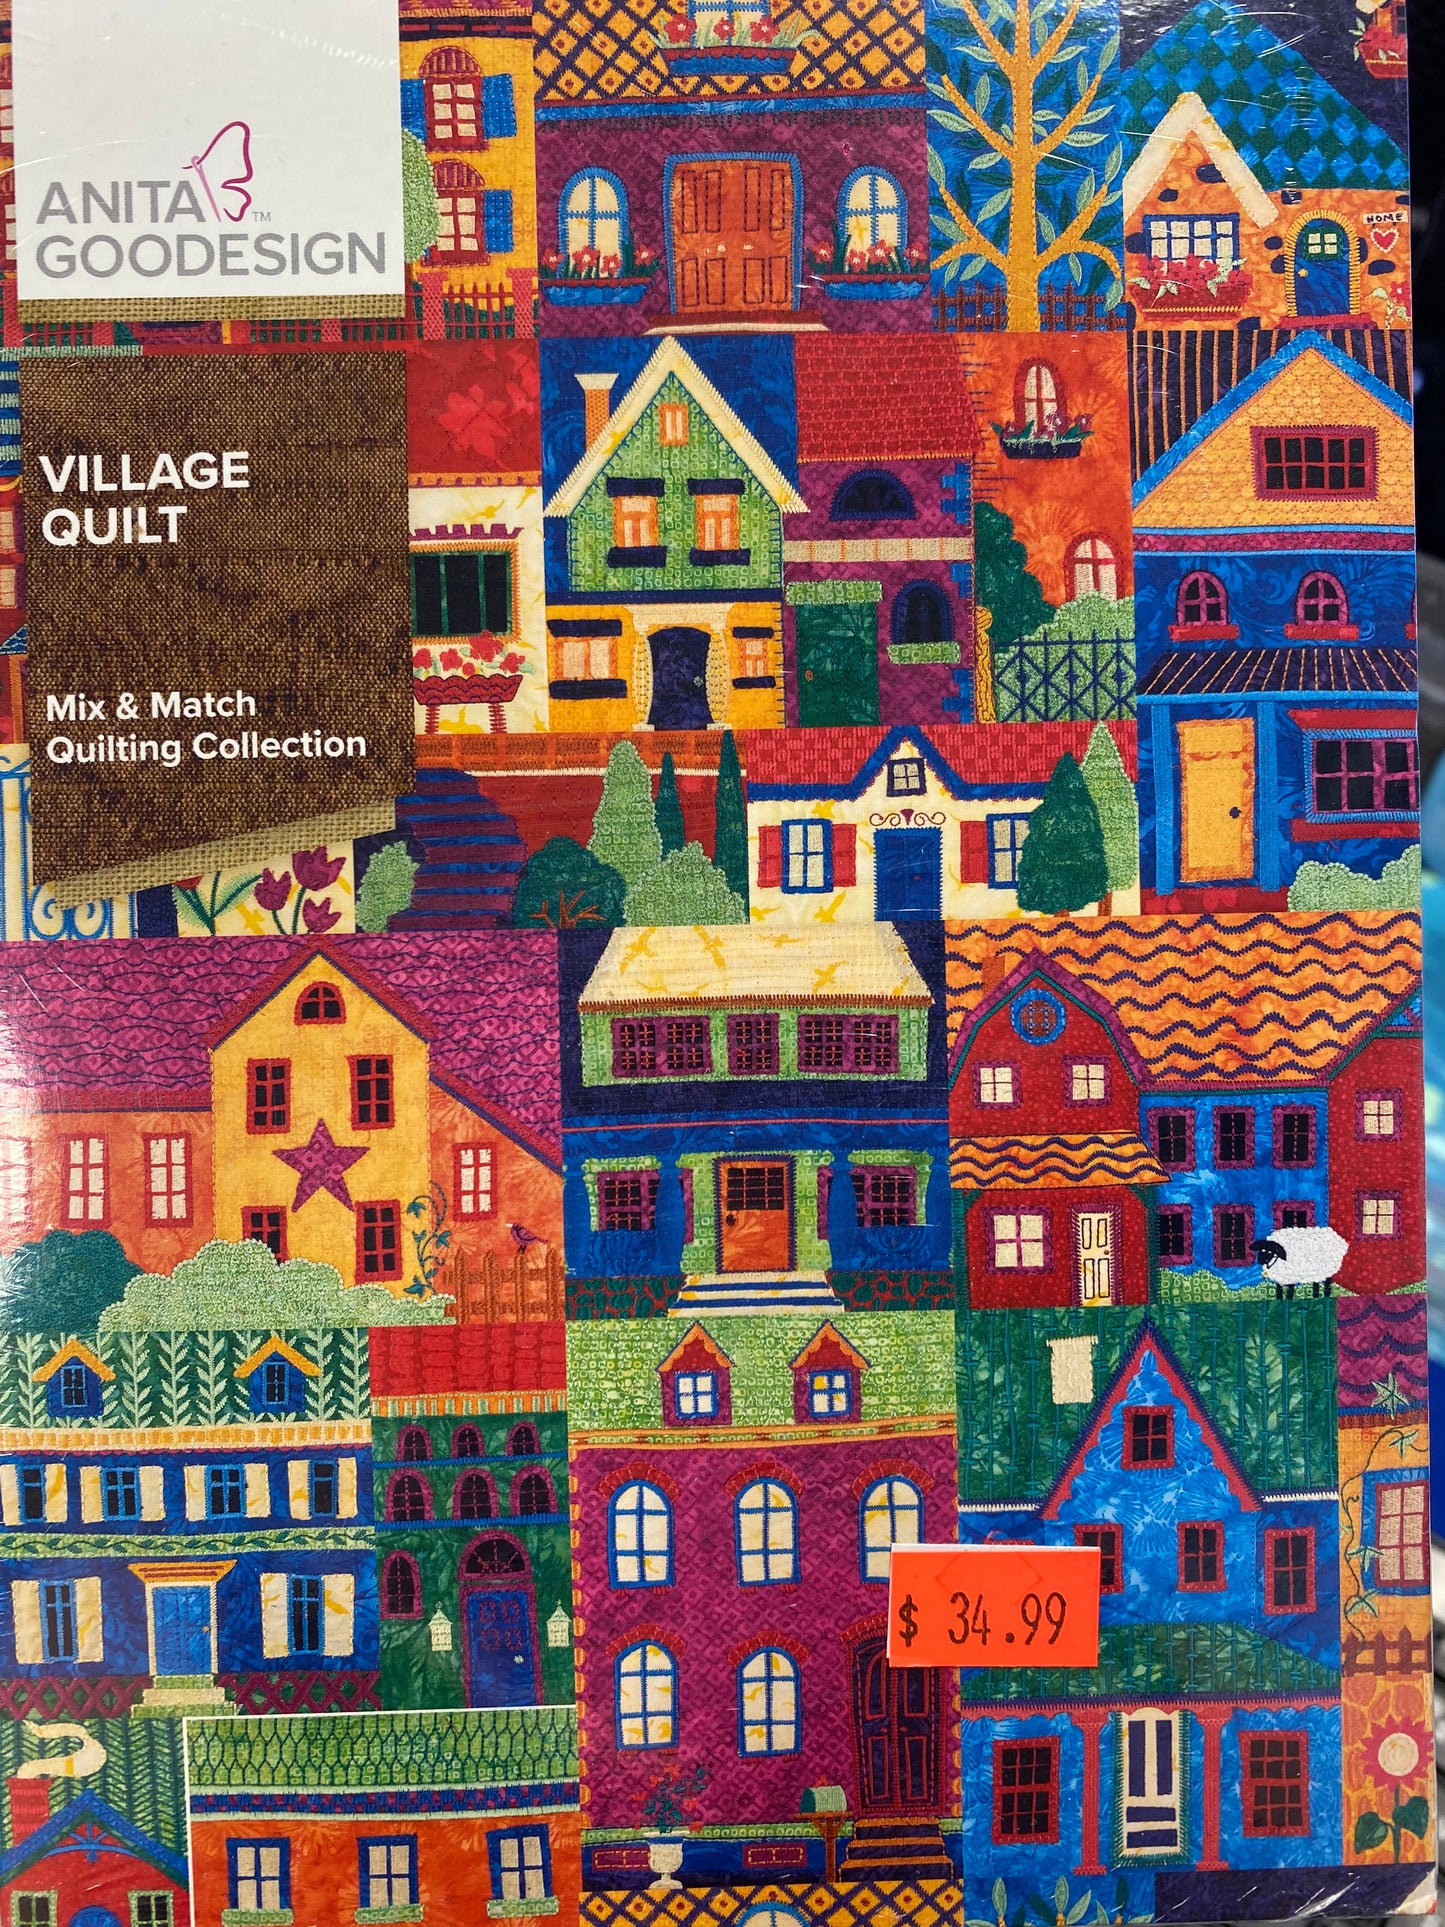 Village Quilt by Anita Goodesign